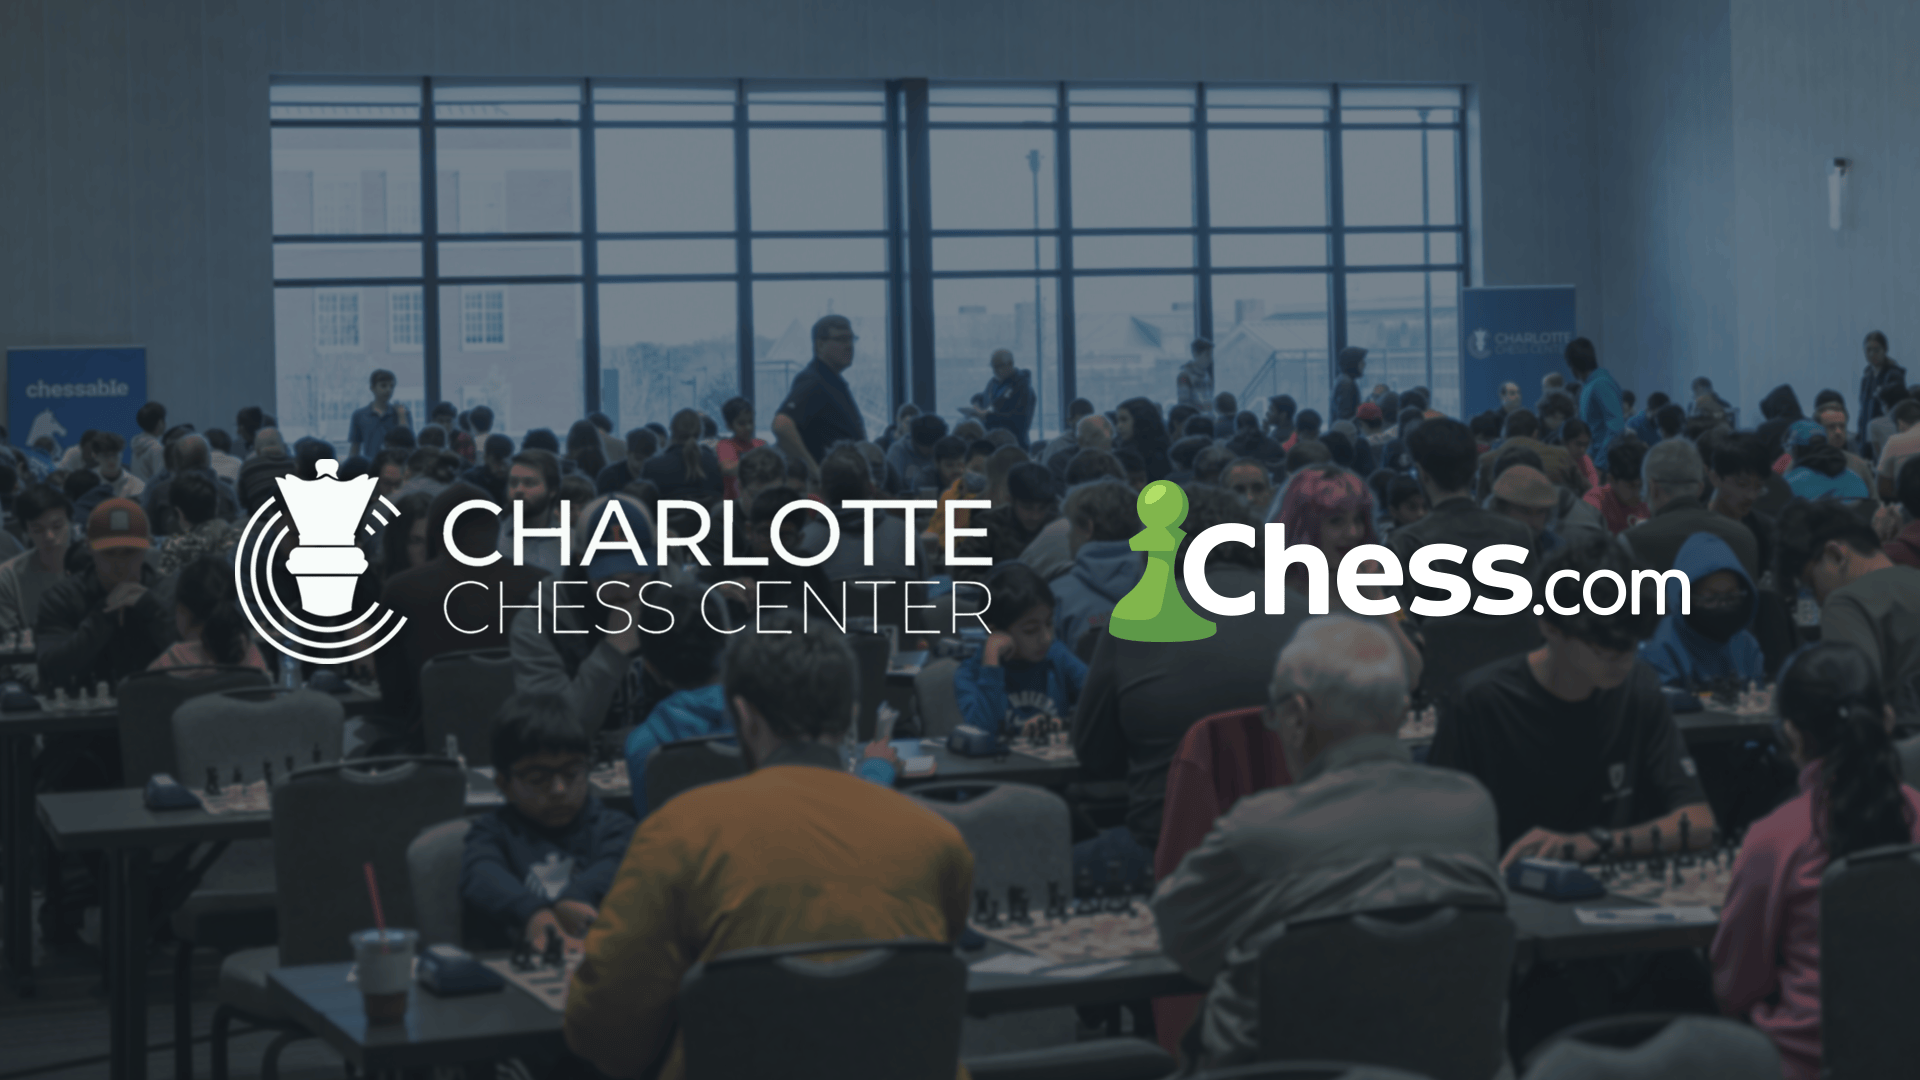 Chess.com 宣布与夏洛特国际象棋中心建立合作伙伴关系